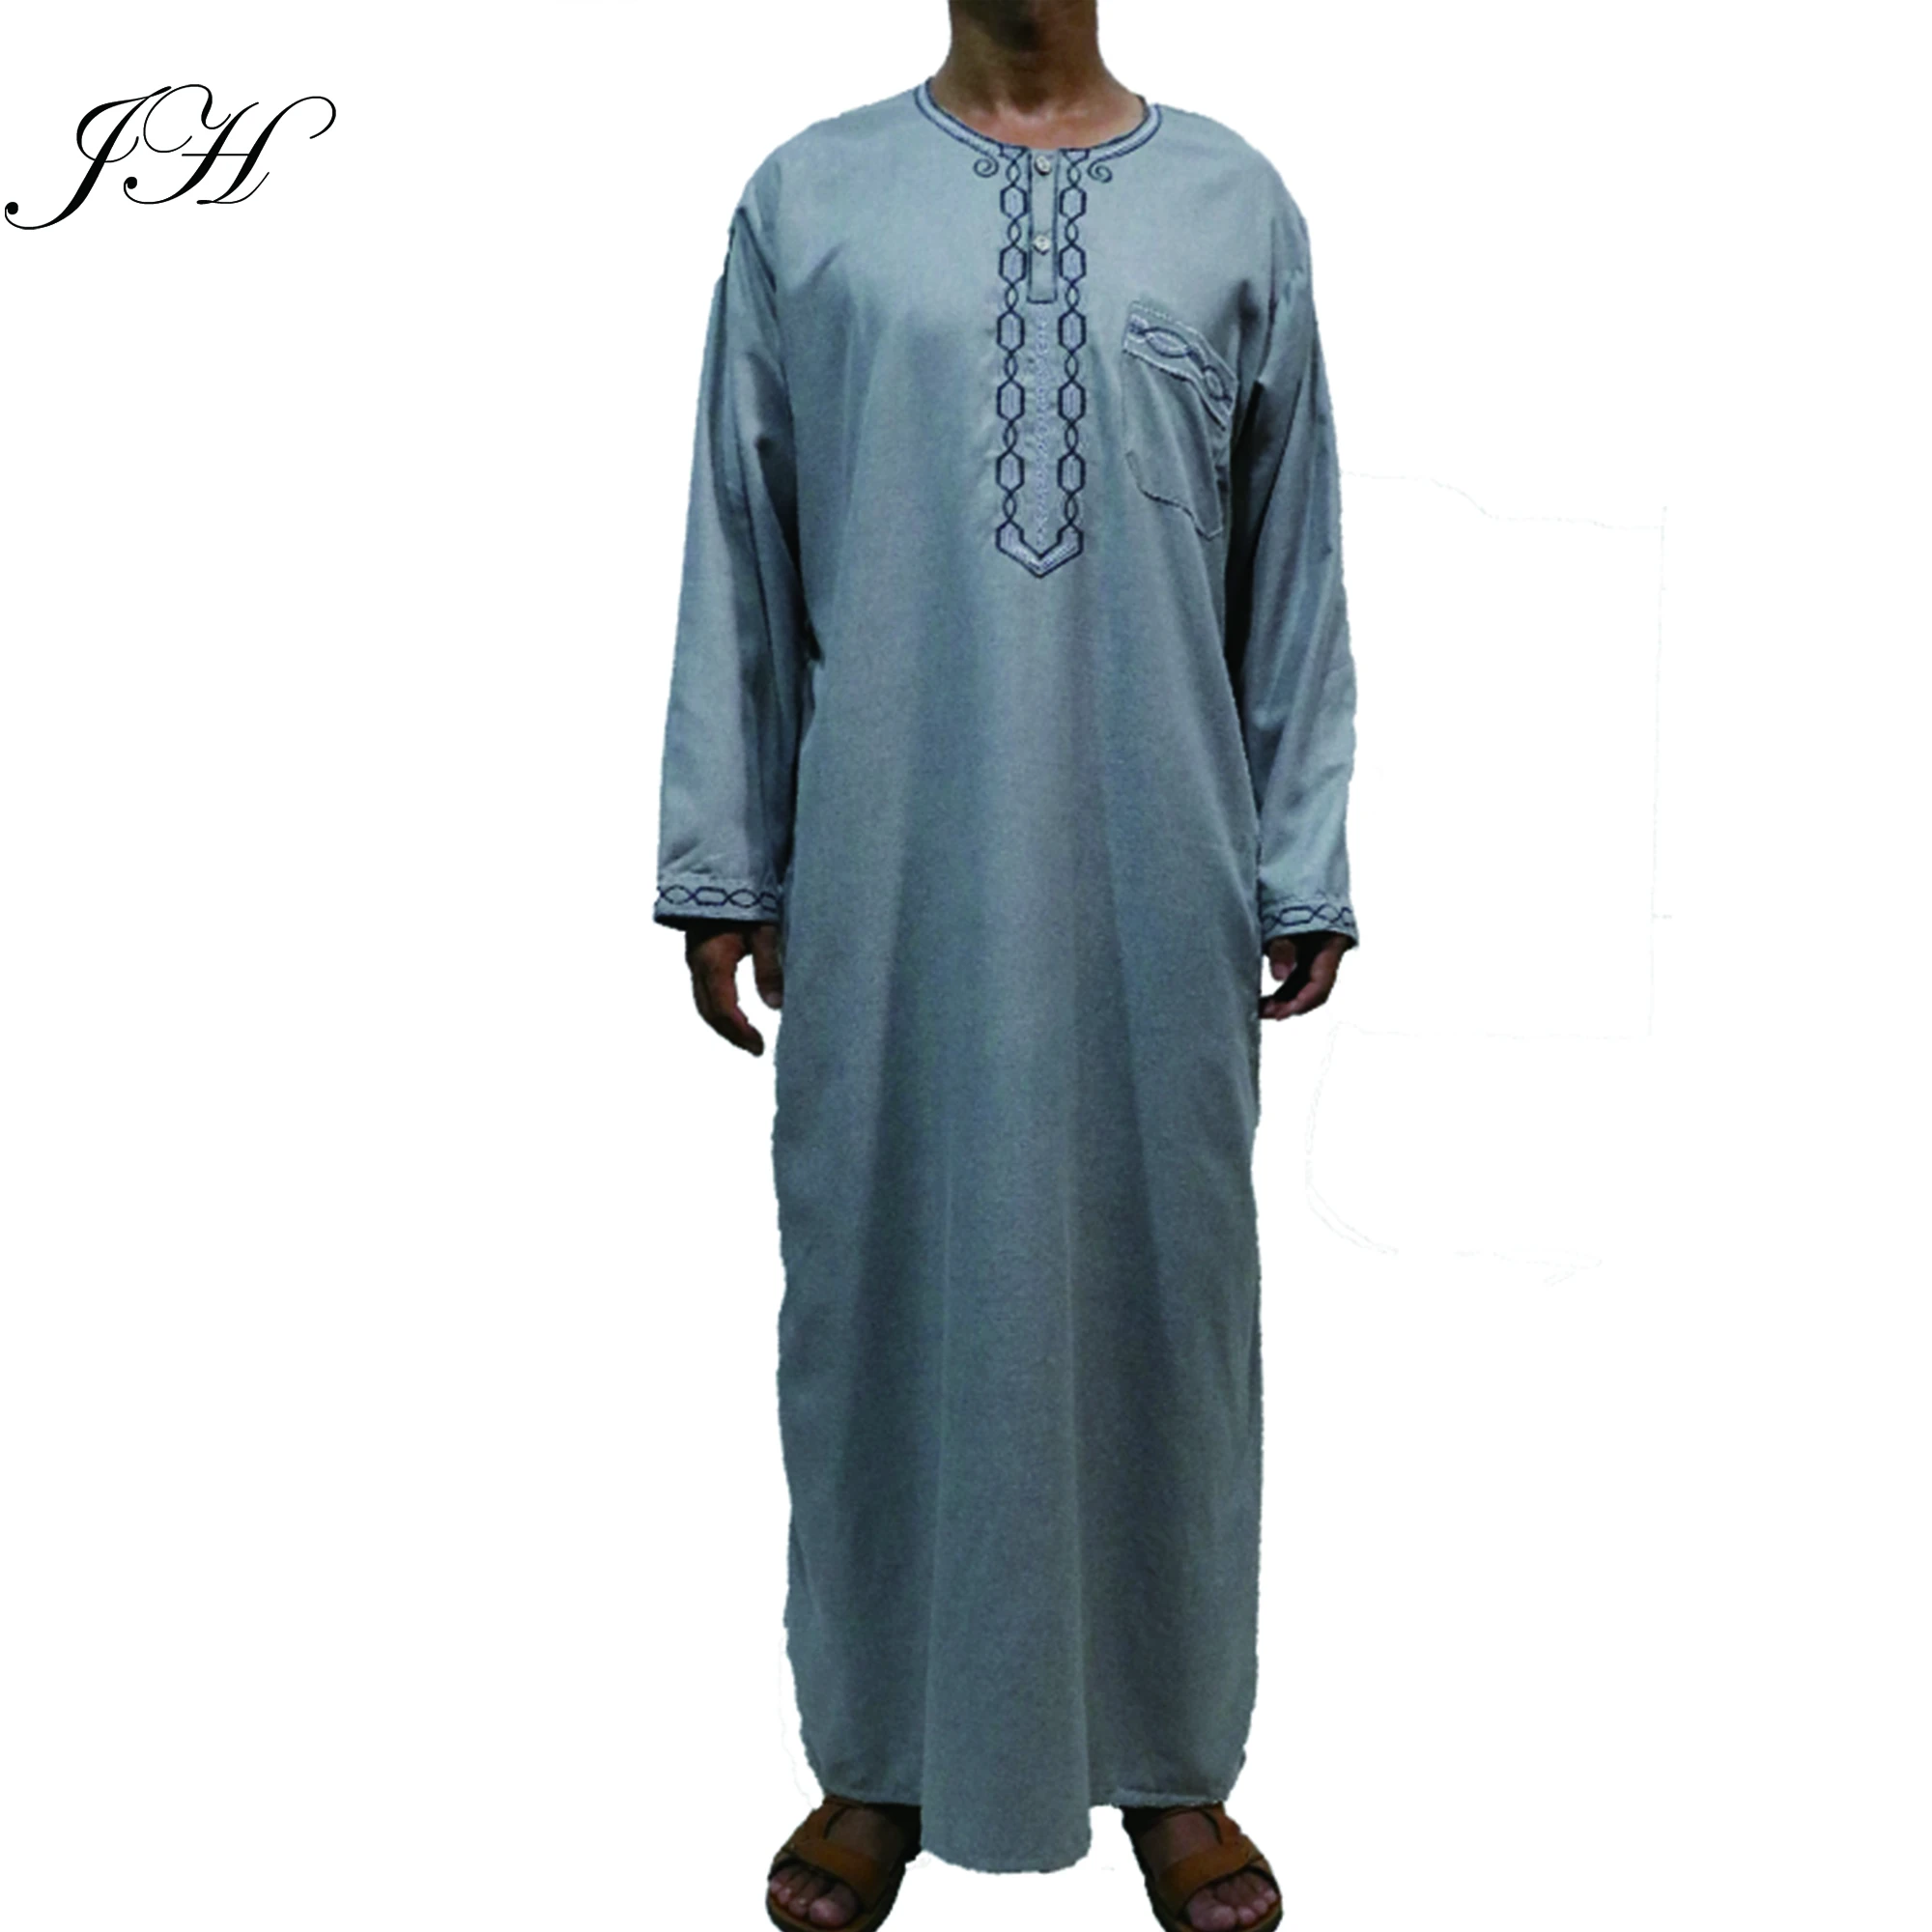 男性のためのイスラム教徒のトーブジュバメンズコットンオマーン刺繍アラブローブイスラム服ラマダン Buy ムスリムトーブのための男性 メンズ Omani 刺繍アラブローブ Product On Alibaba Com